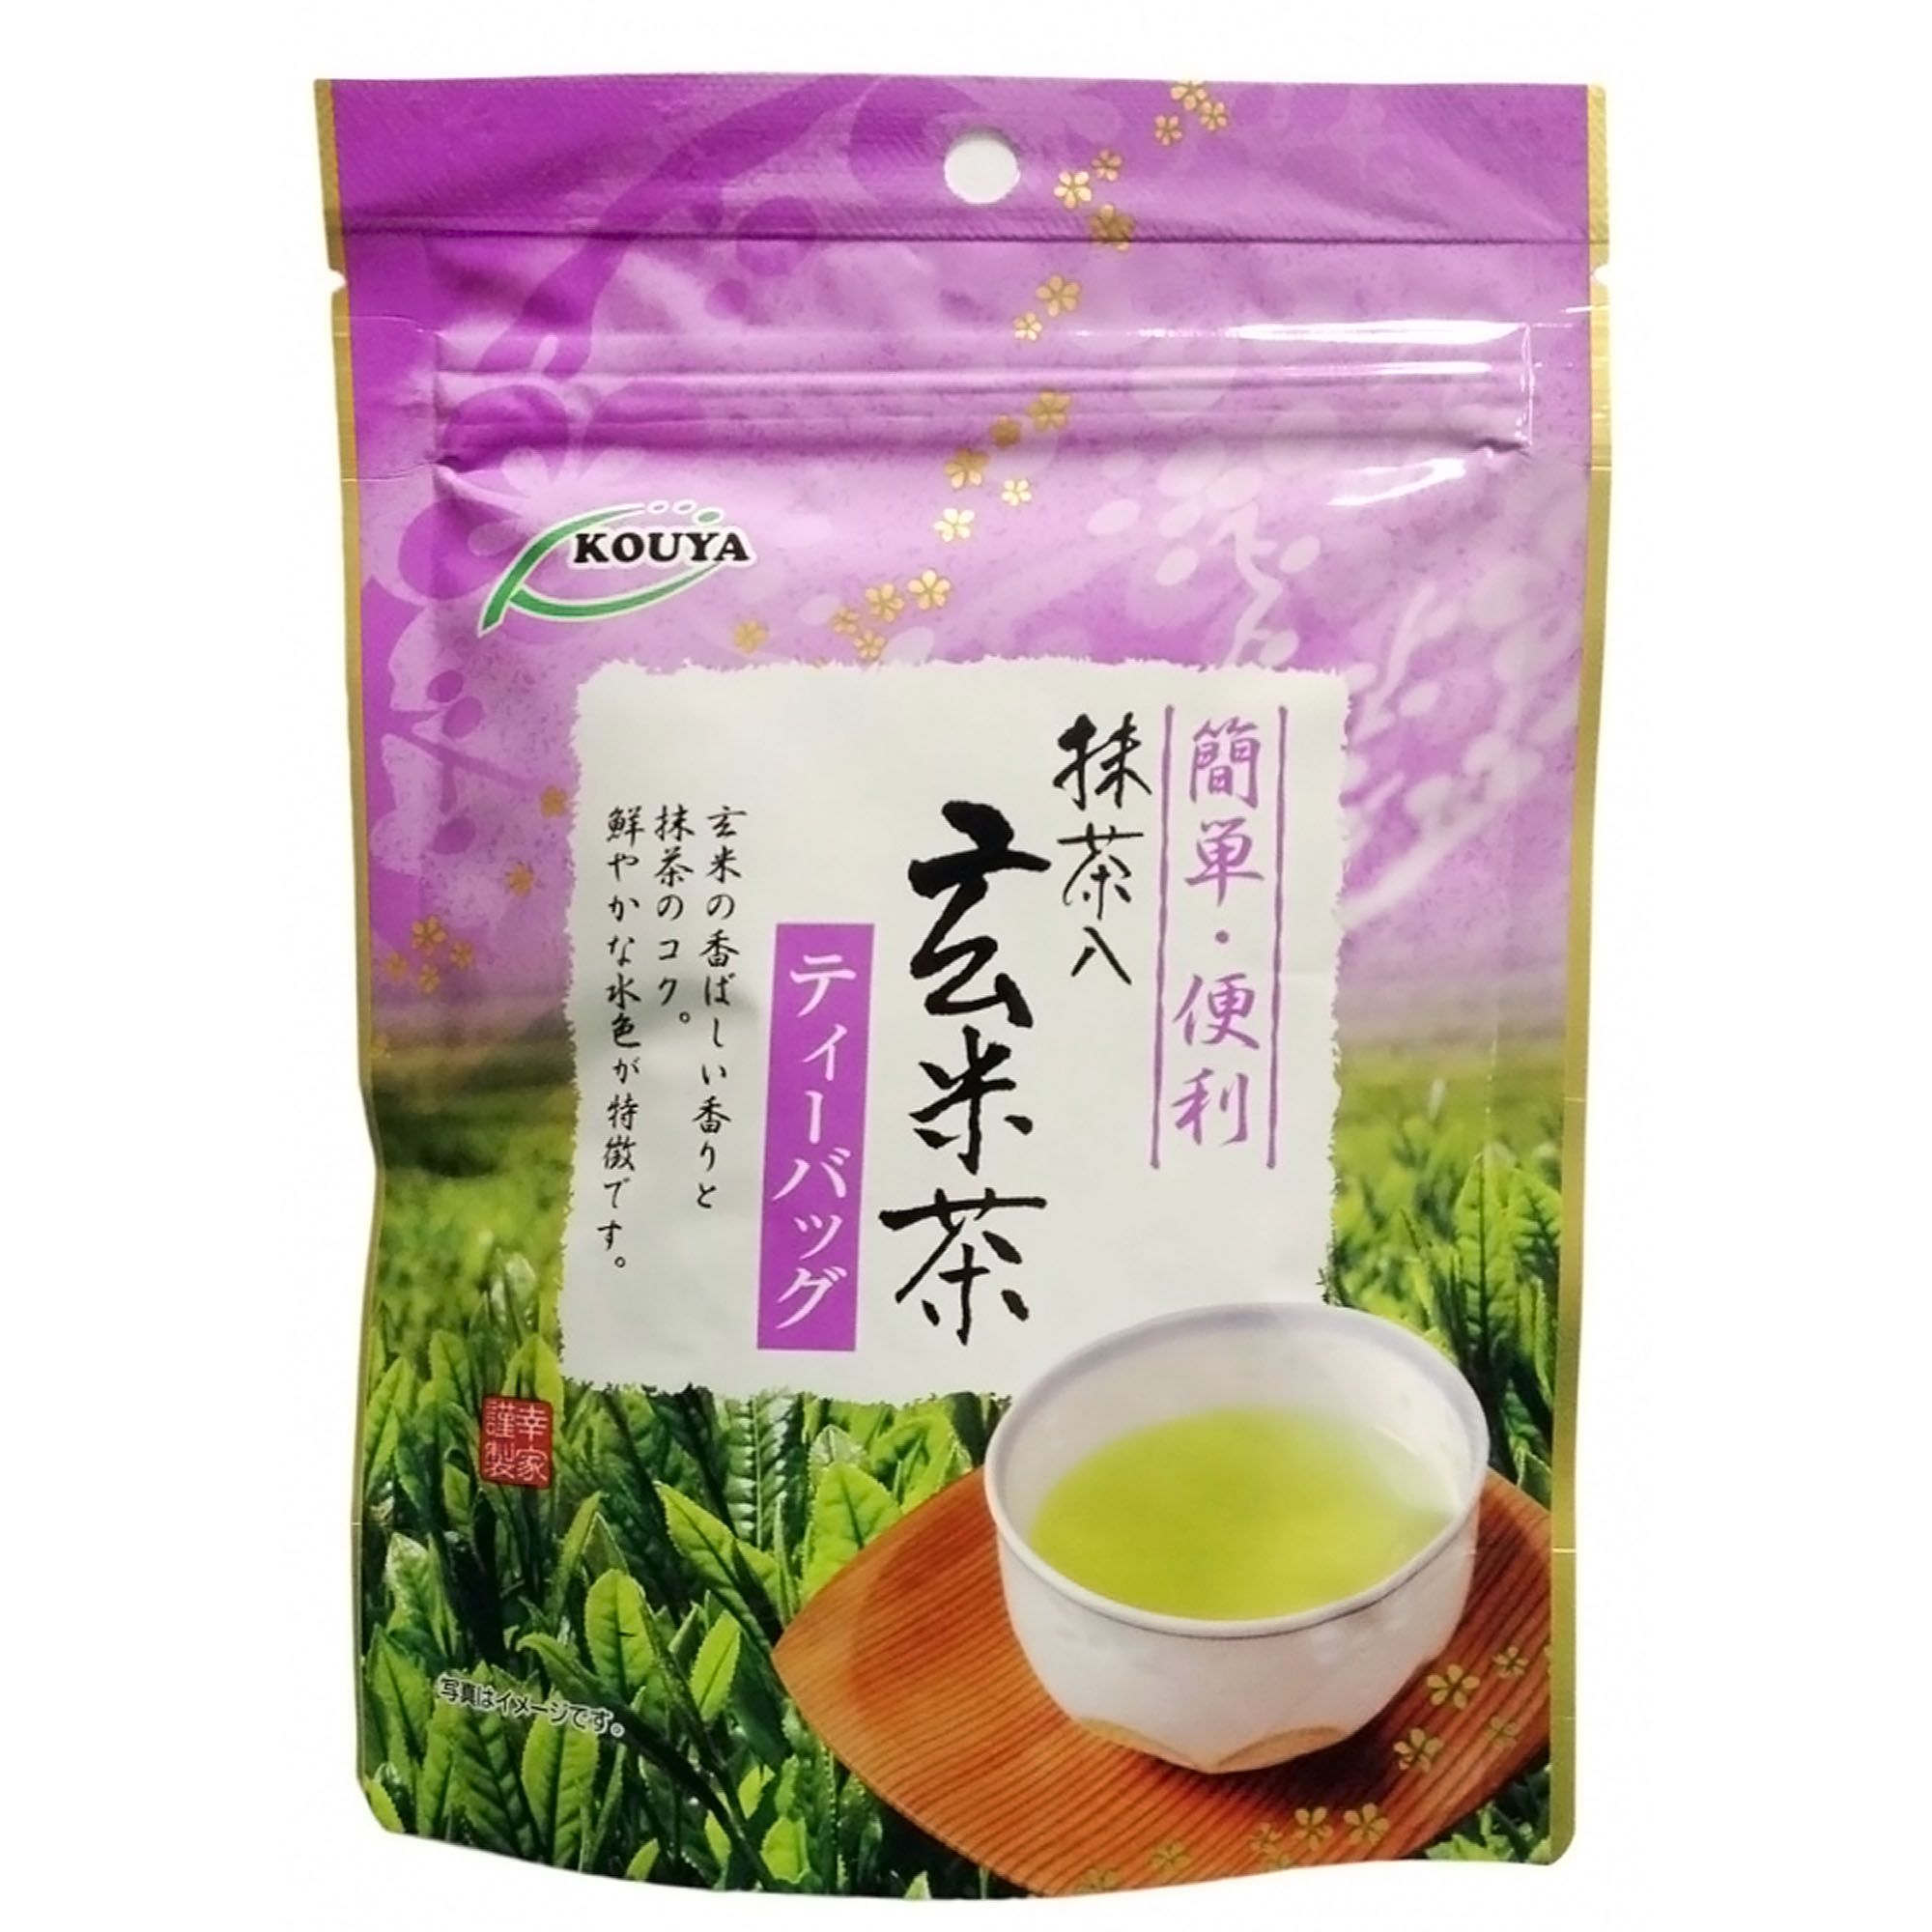 Японский чай Kouya Геммай-ча (15 шт), 30 г чай зеленый rioba матча 100 гр